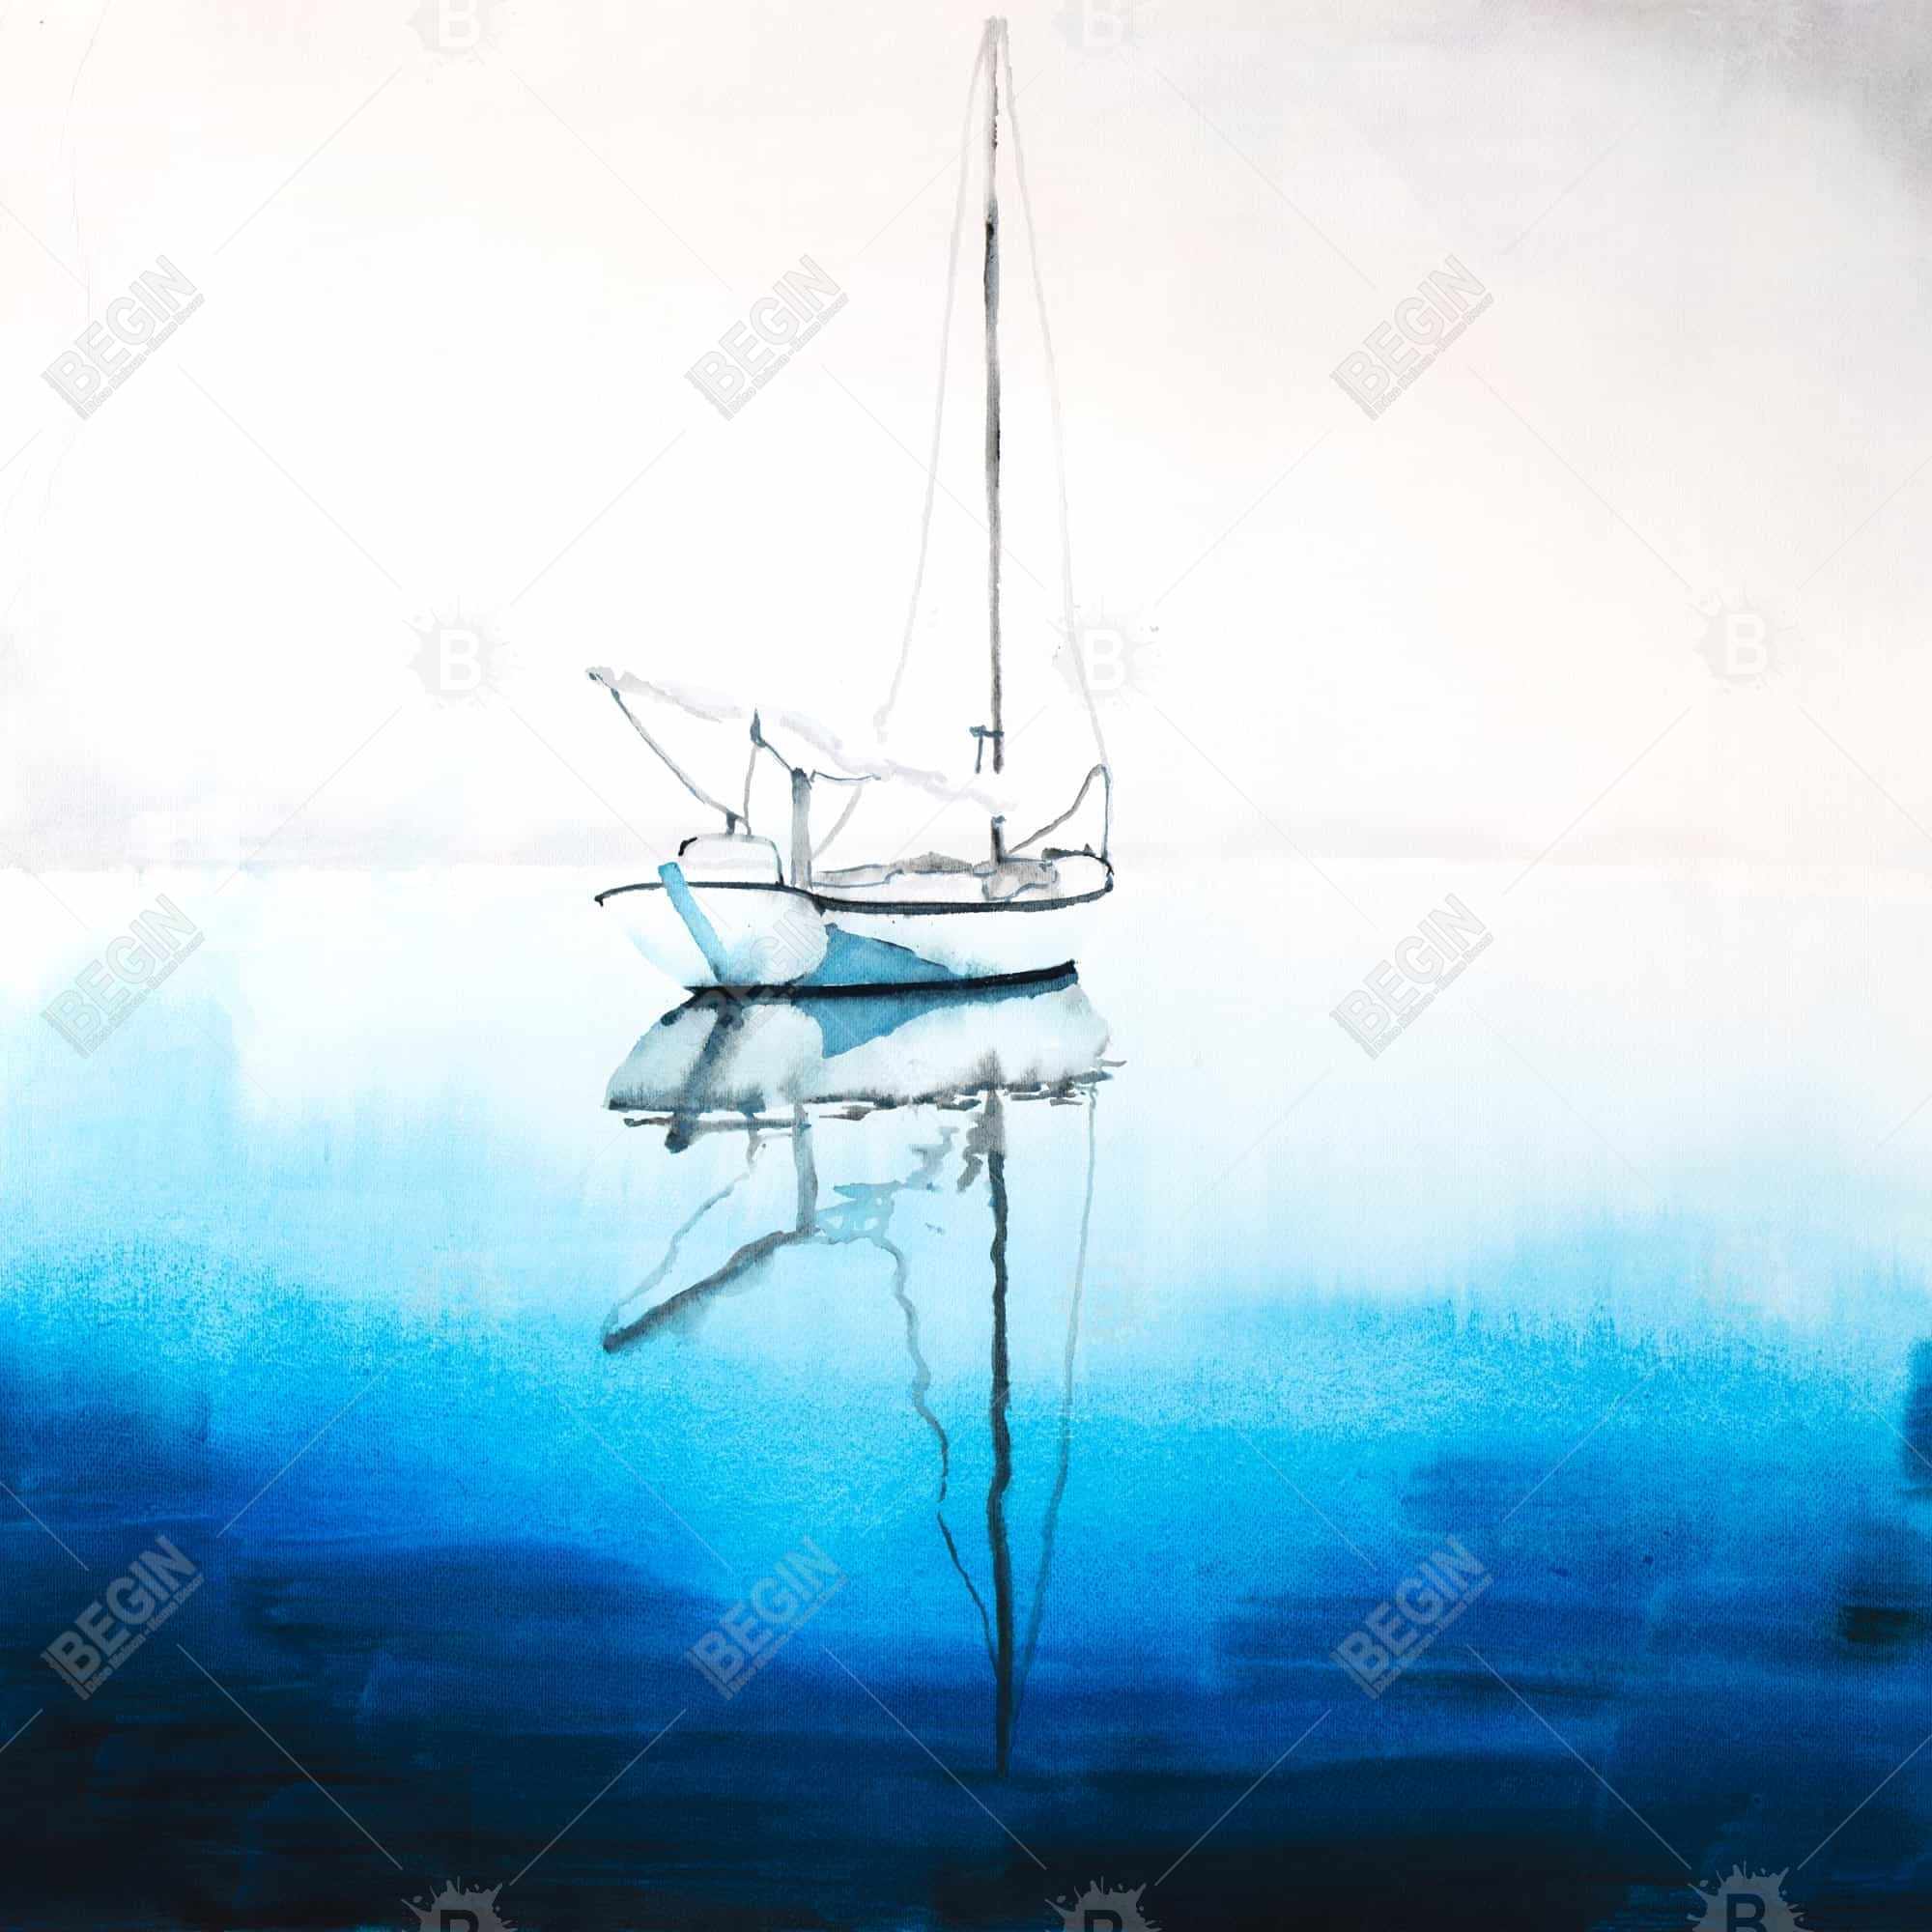 Bateau blanc sur eau d'un bleu profond